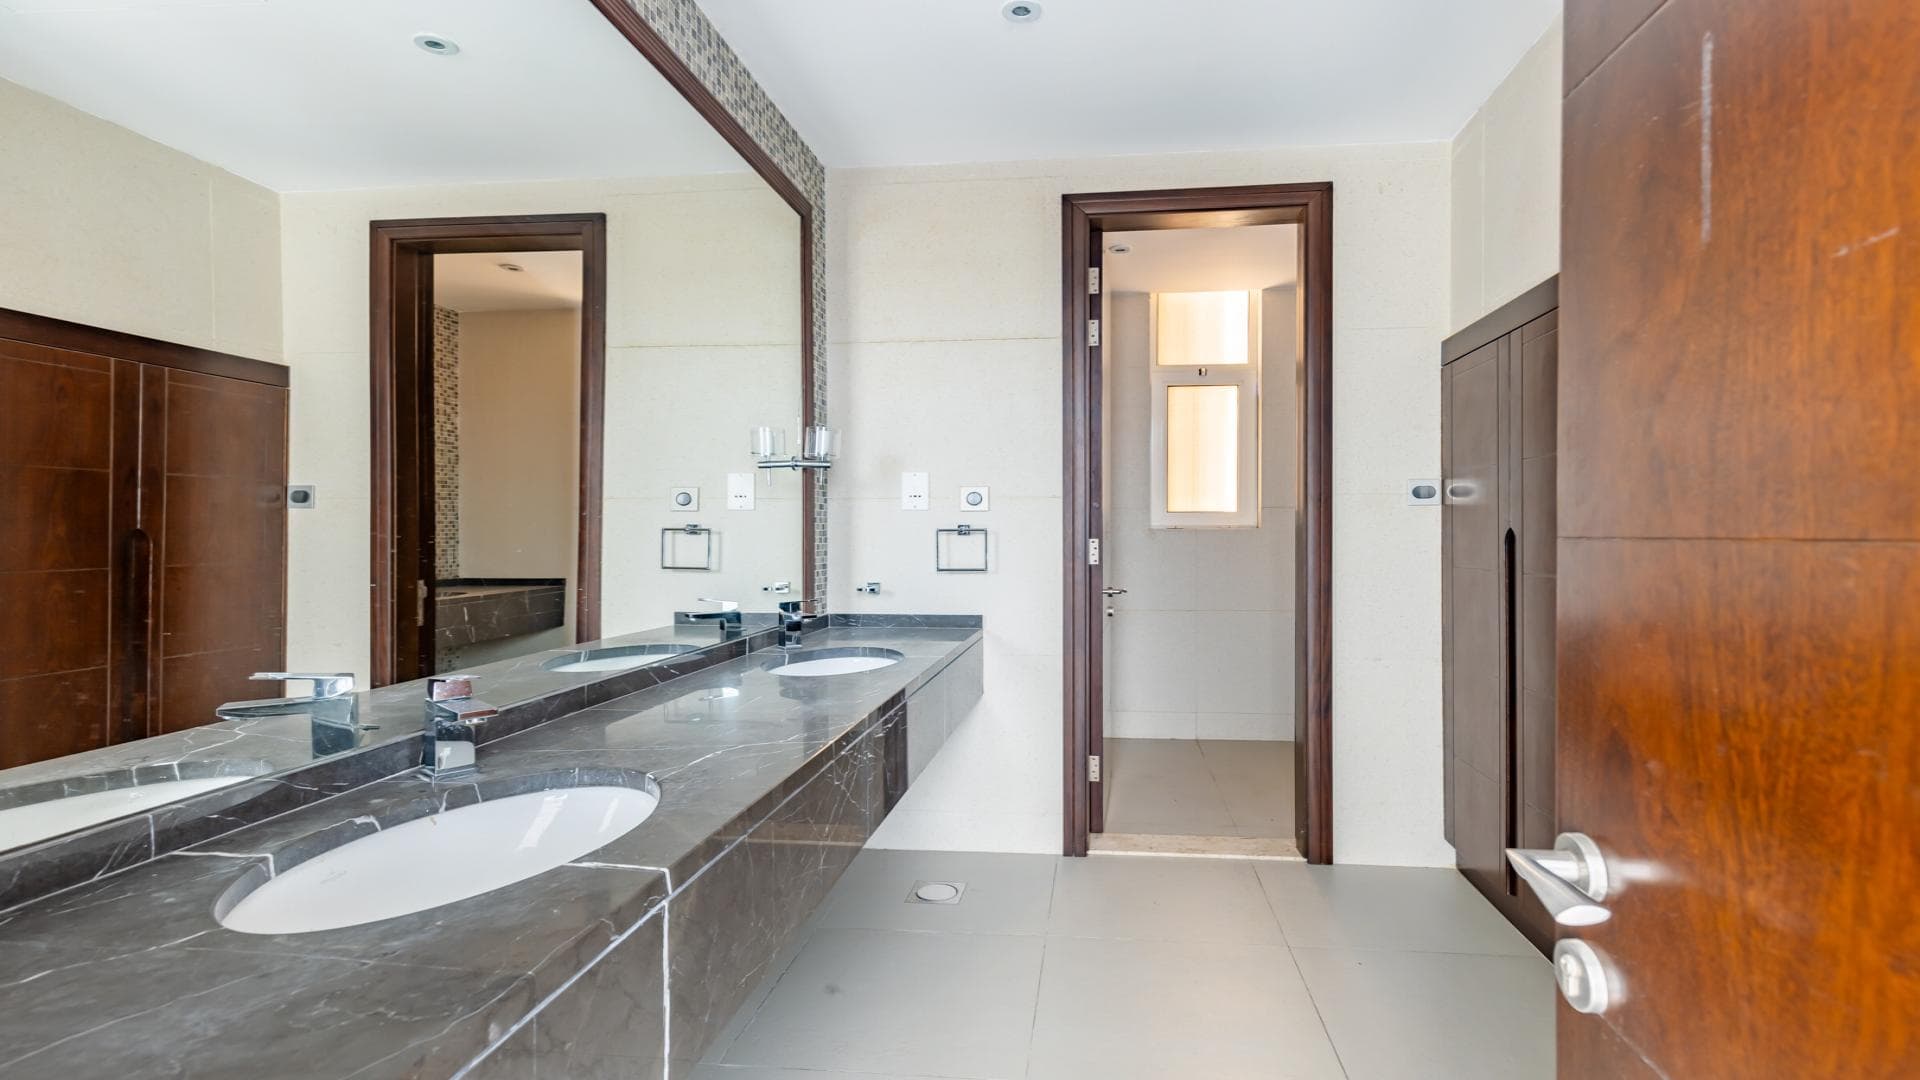 6 Bedroom Villa For Rent Al Thamam 01 Lp38808 Bd7c5af8edd7480.jpg